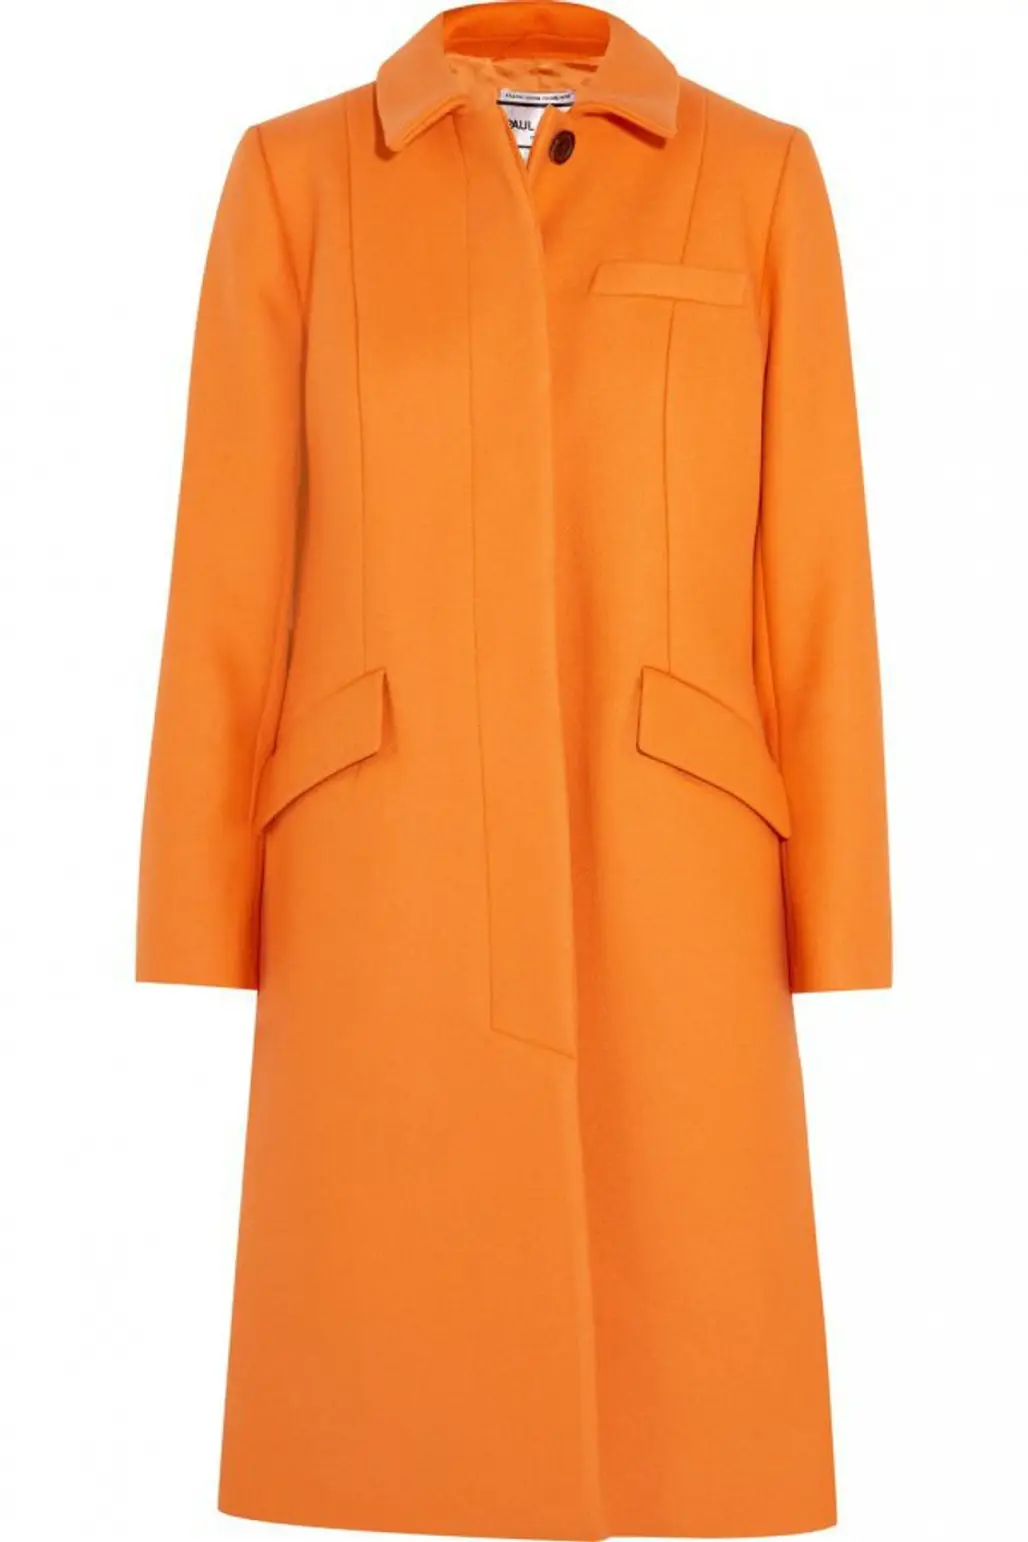 coat, overcoat, orange, day dress, peach,